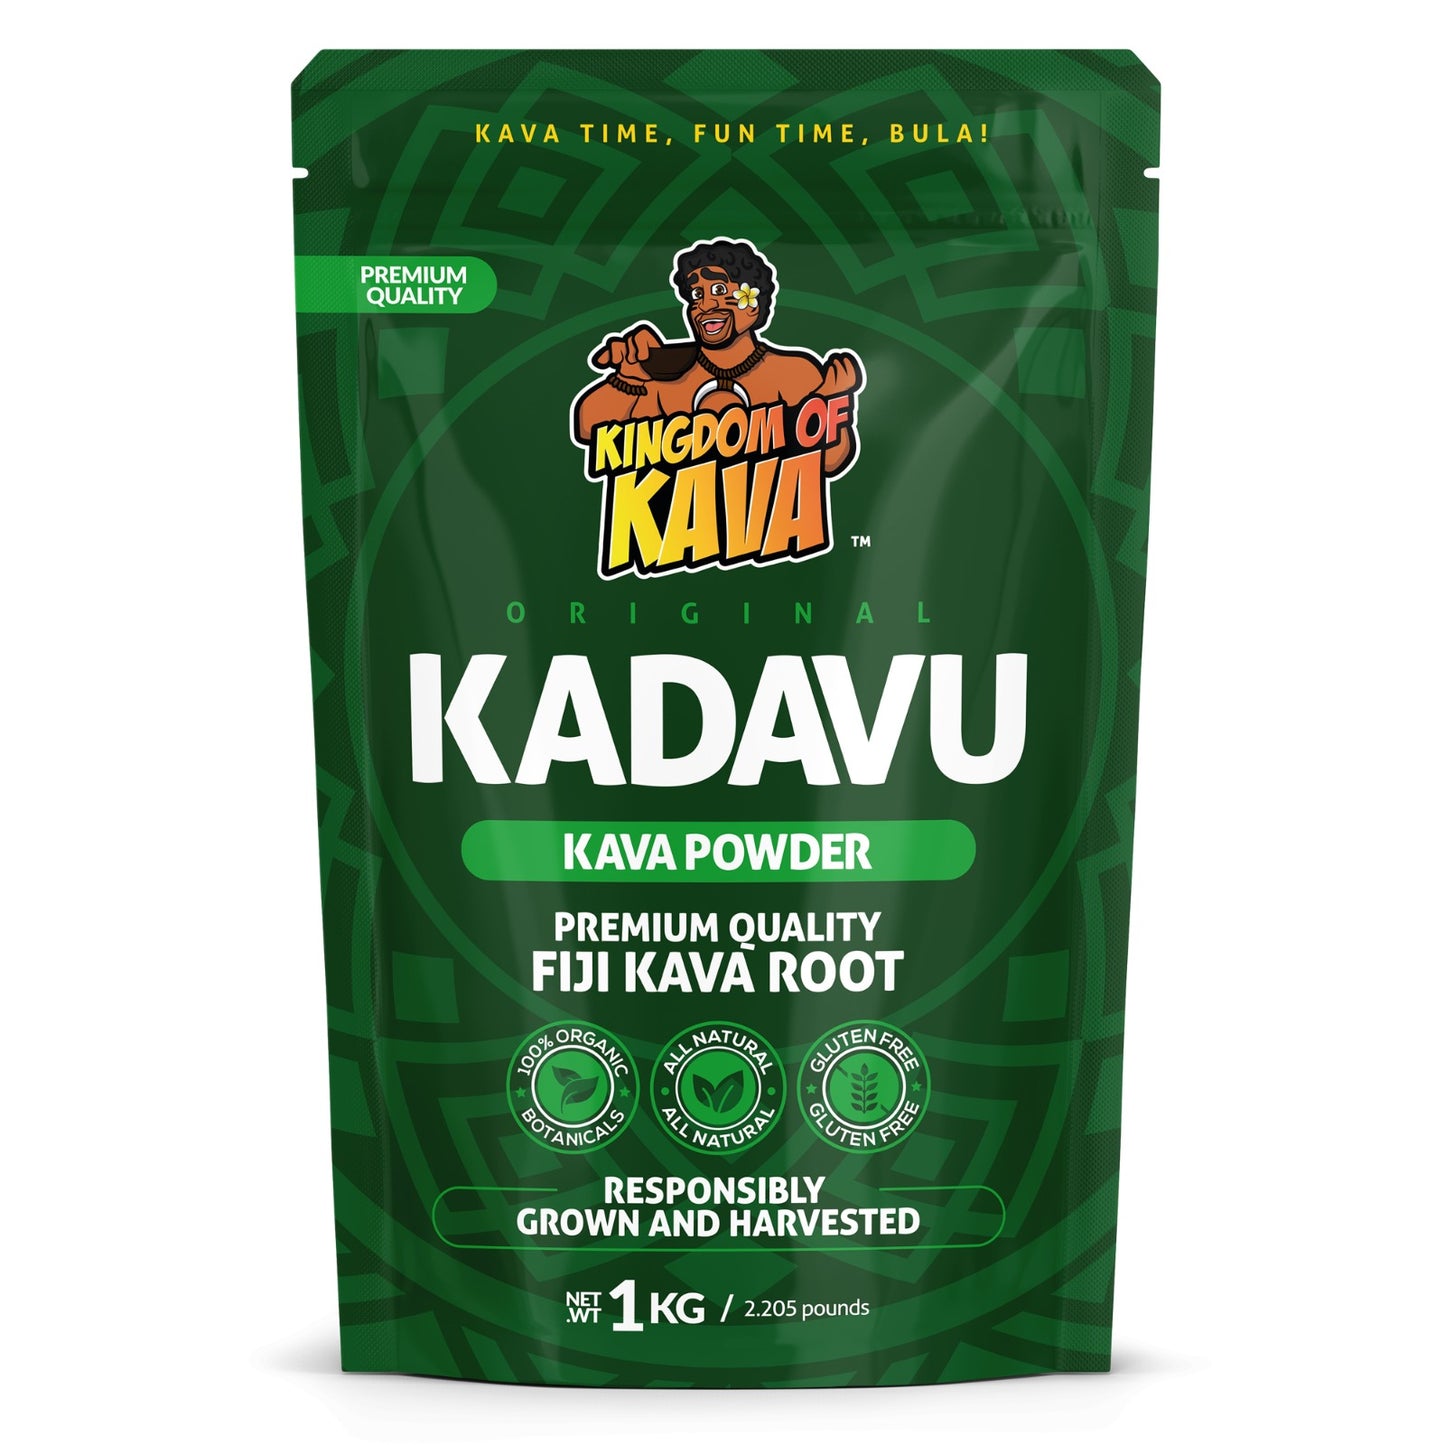 Premium Quality Kadavu Kava